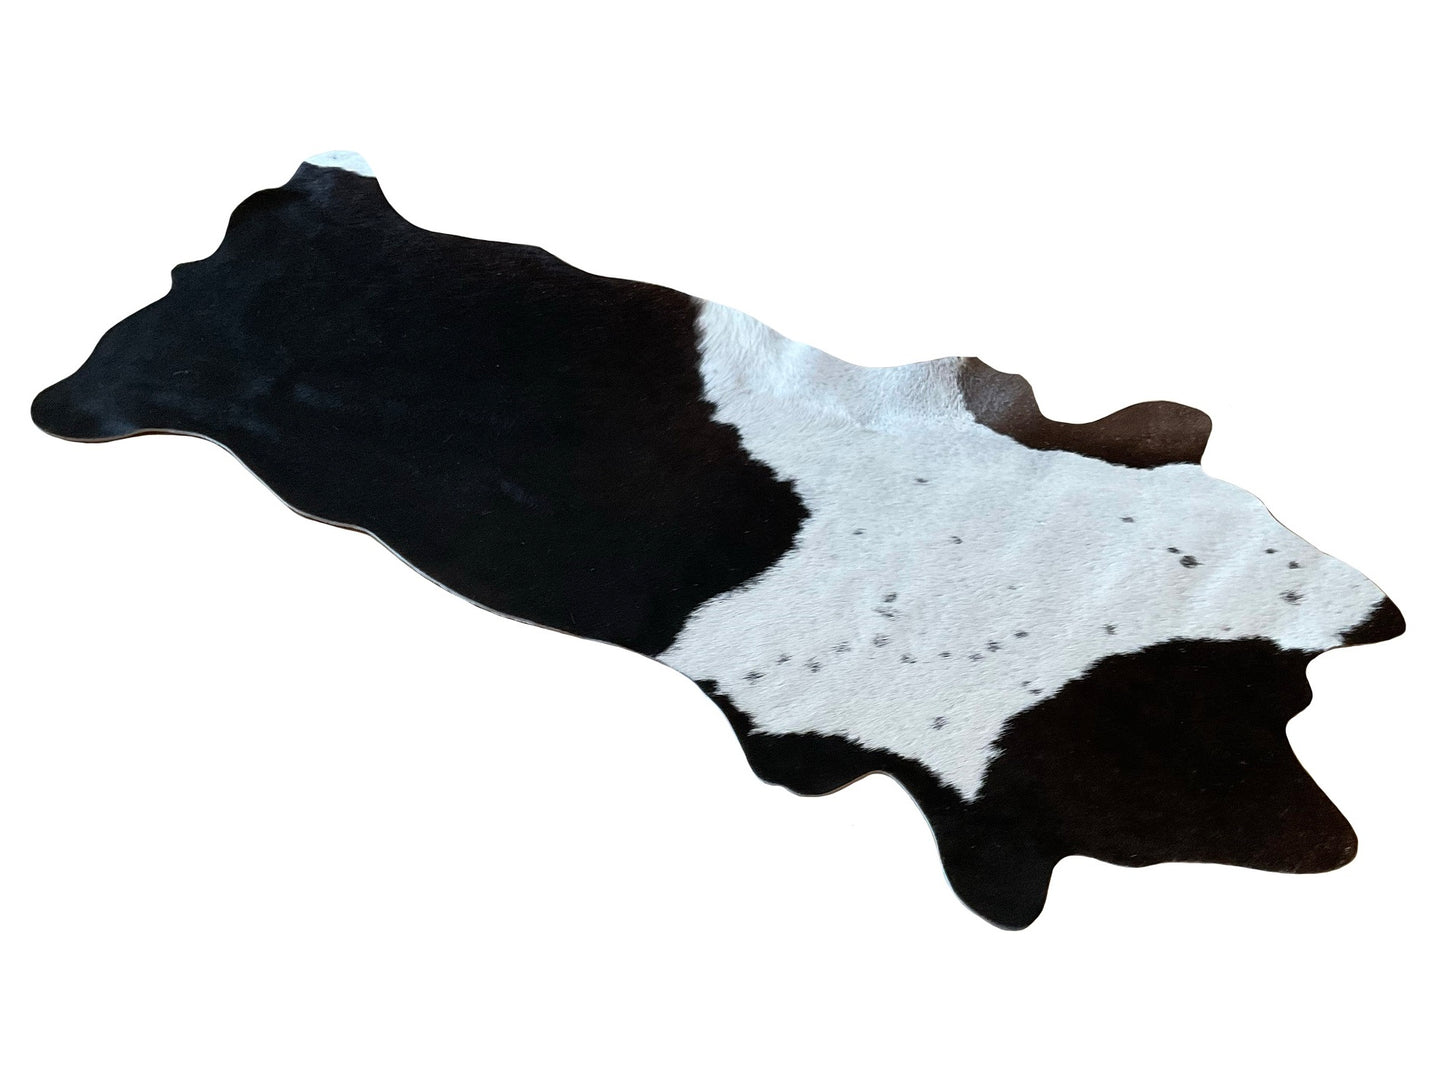 unendlich schoen - Echter Kuhfell Teppich klein, Handmade in Germany, geruchsneutral, Rinderfell ideal für Wohnzimmer Esszimmer Flur  "Die originale Schönheit" (Gr.160x70cm, schwarz weiss)